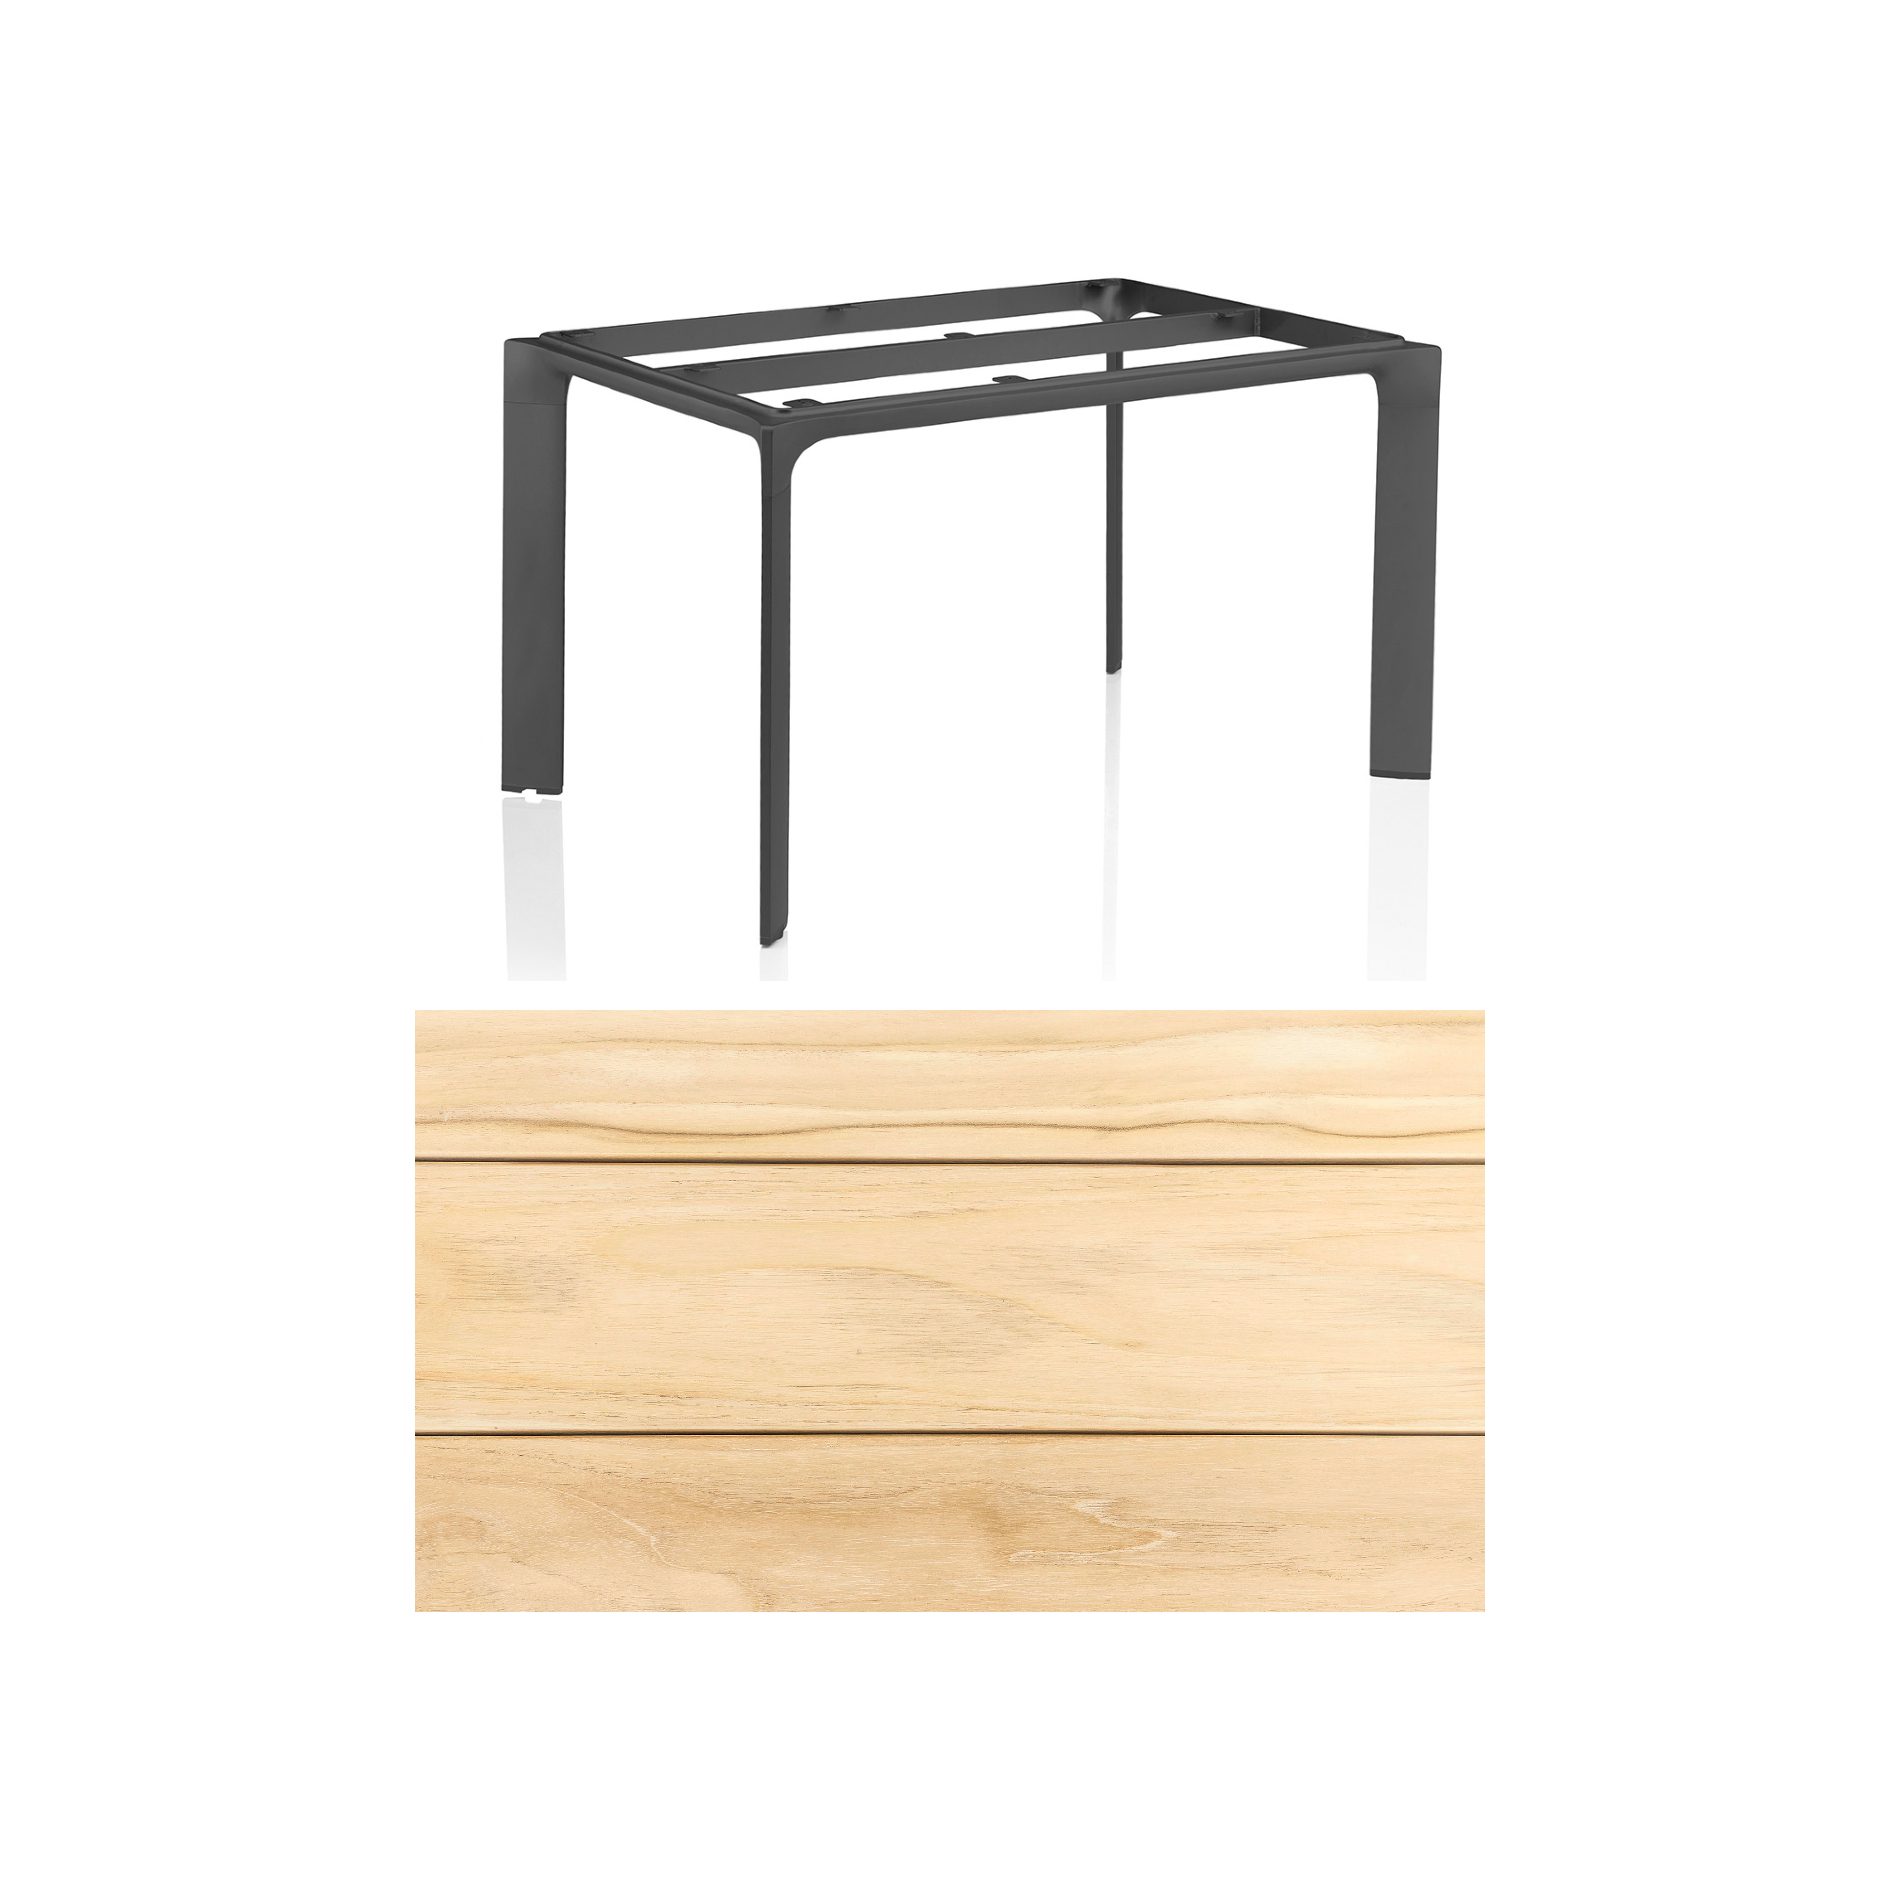 Kettler "Diamond" Tischsystem Gartentisch, Tischgestell Aluminium anthrazit, Tischplatte Teakholz breite Leisten, 140x70 cm